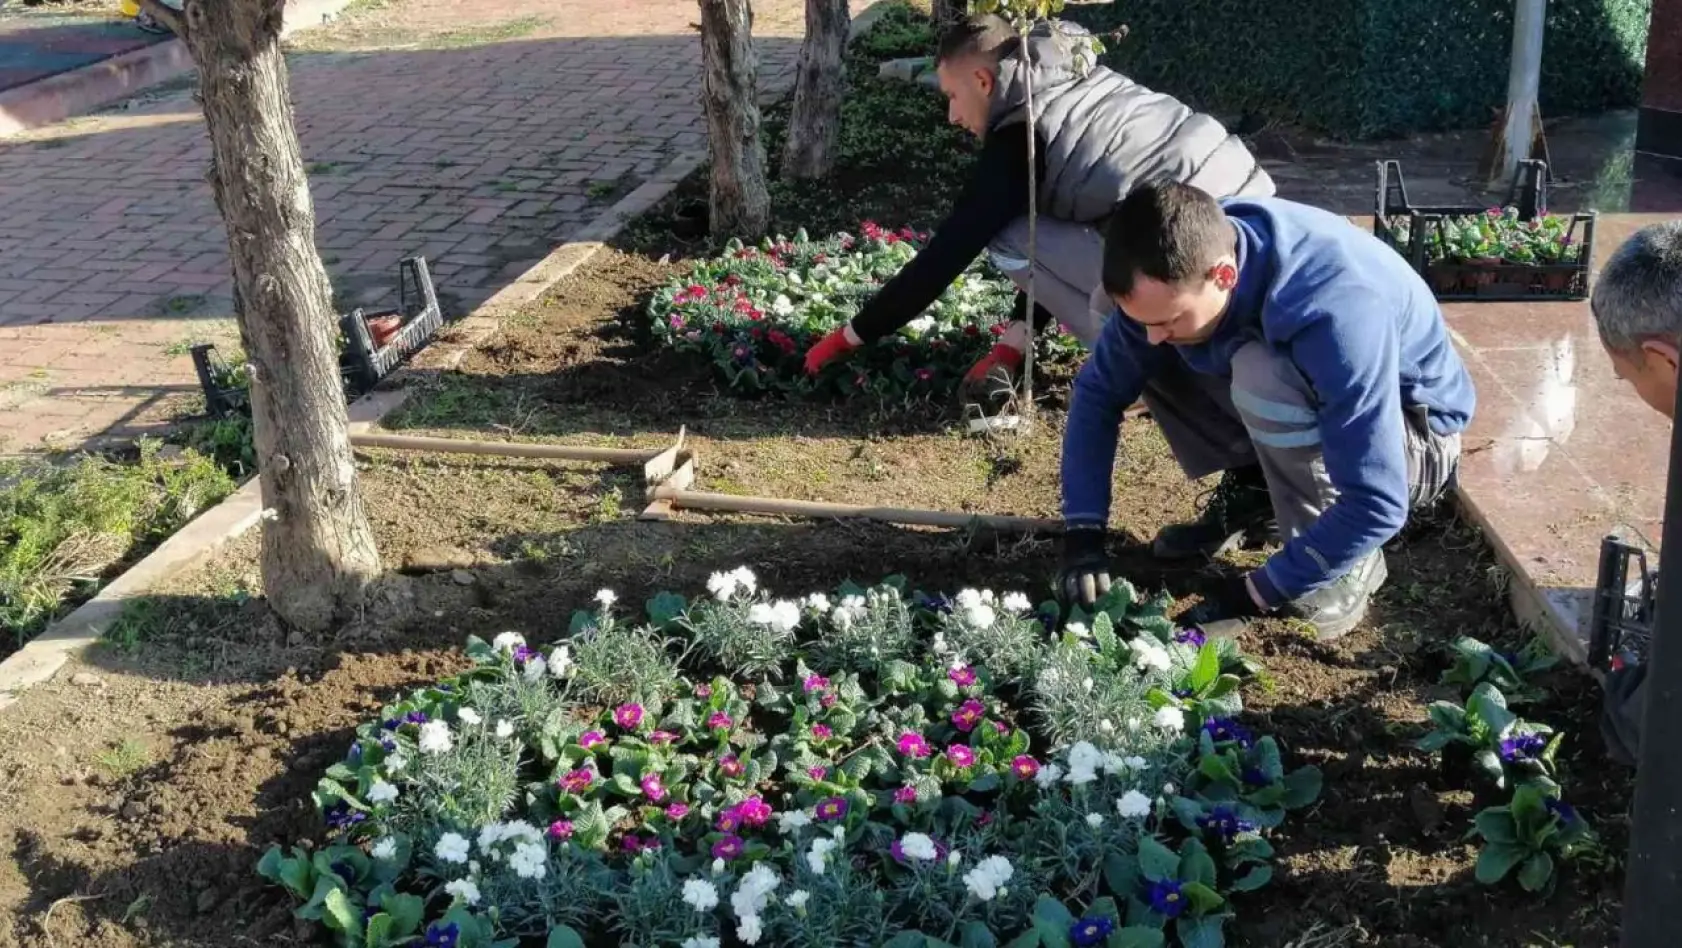 Edremit Belediyesi yeni park çalışmalarına hız verdi